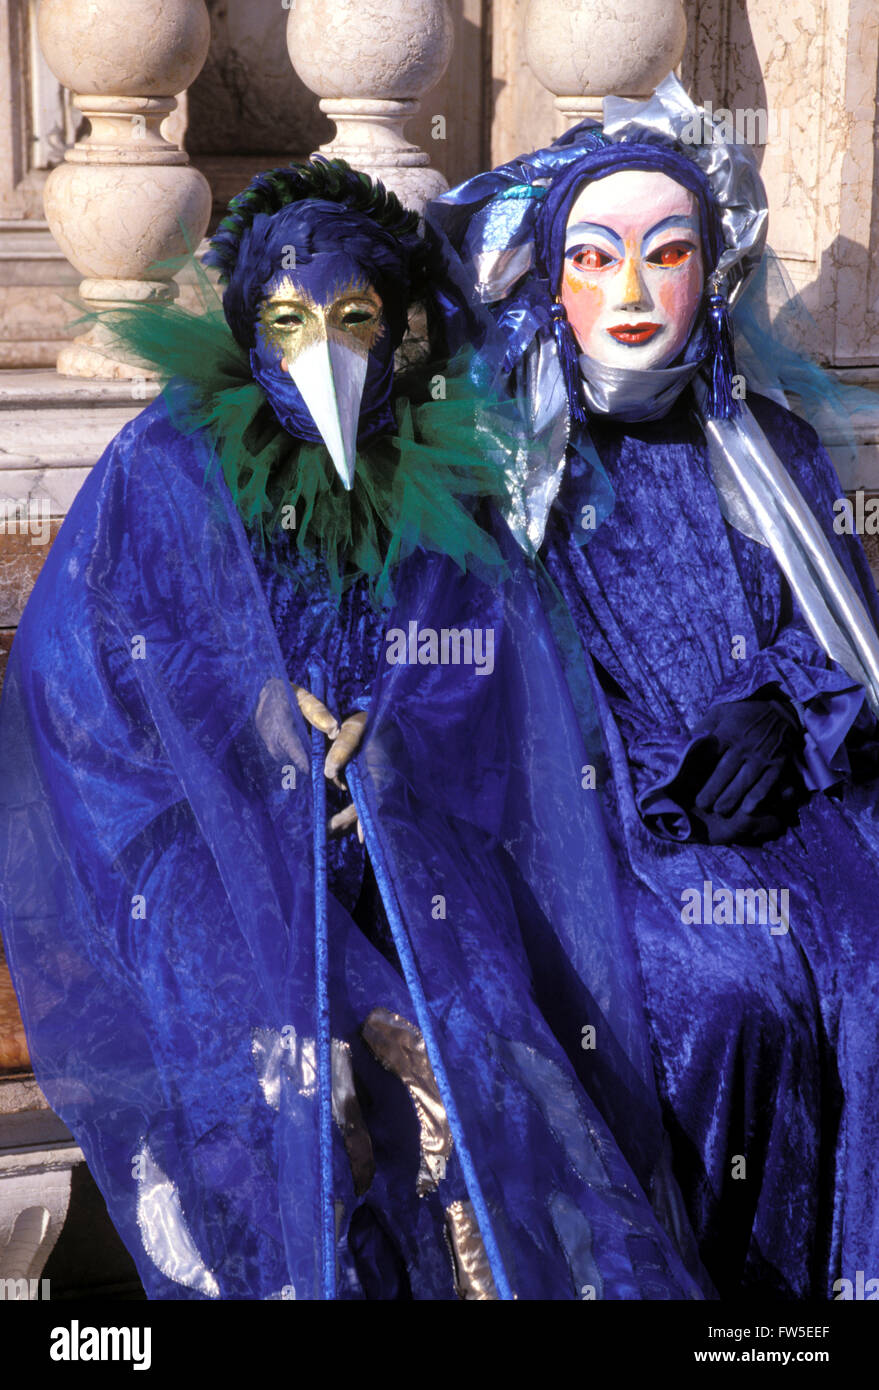 Karneval in Venedig - zwei Blau gehüllt kostümierten Figuren (einer mit weißem Schnabel Maske, eine mit weiß lackierten Maske) in Venedig, Italien. Stockfoto